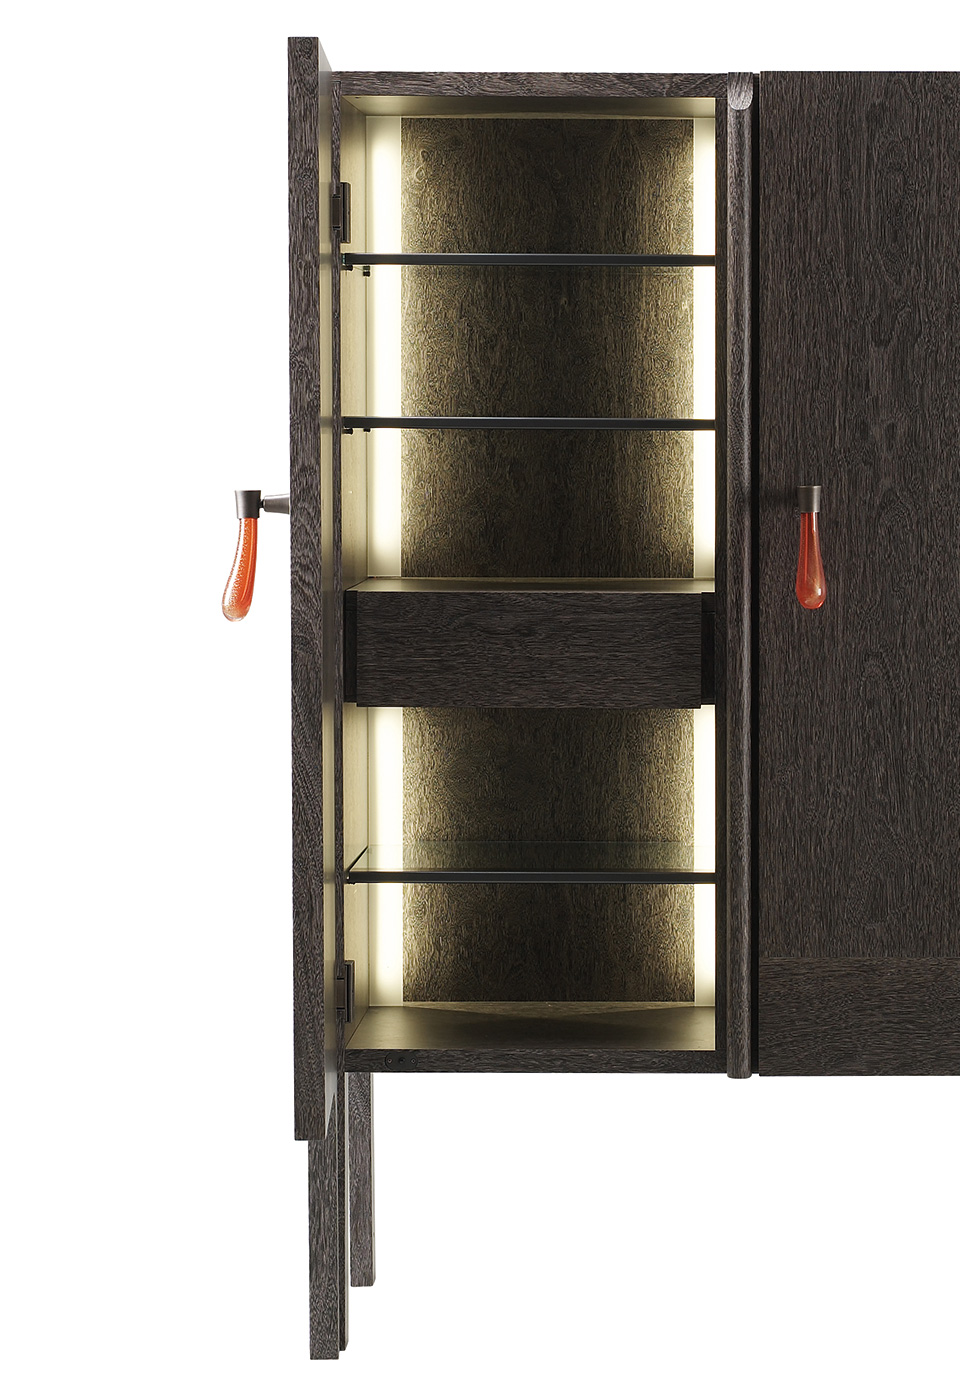 Tom Bombadil — деревянный шкаф из каталога Promemoria с бронзовыми профильными элементами и ручкой из муранского стекла | Promemoria